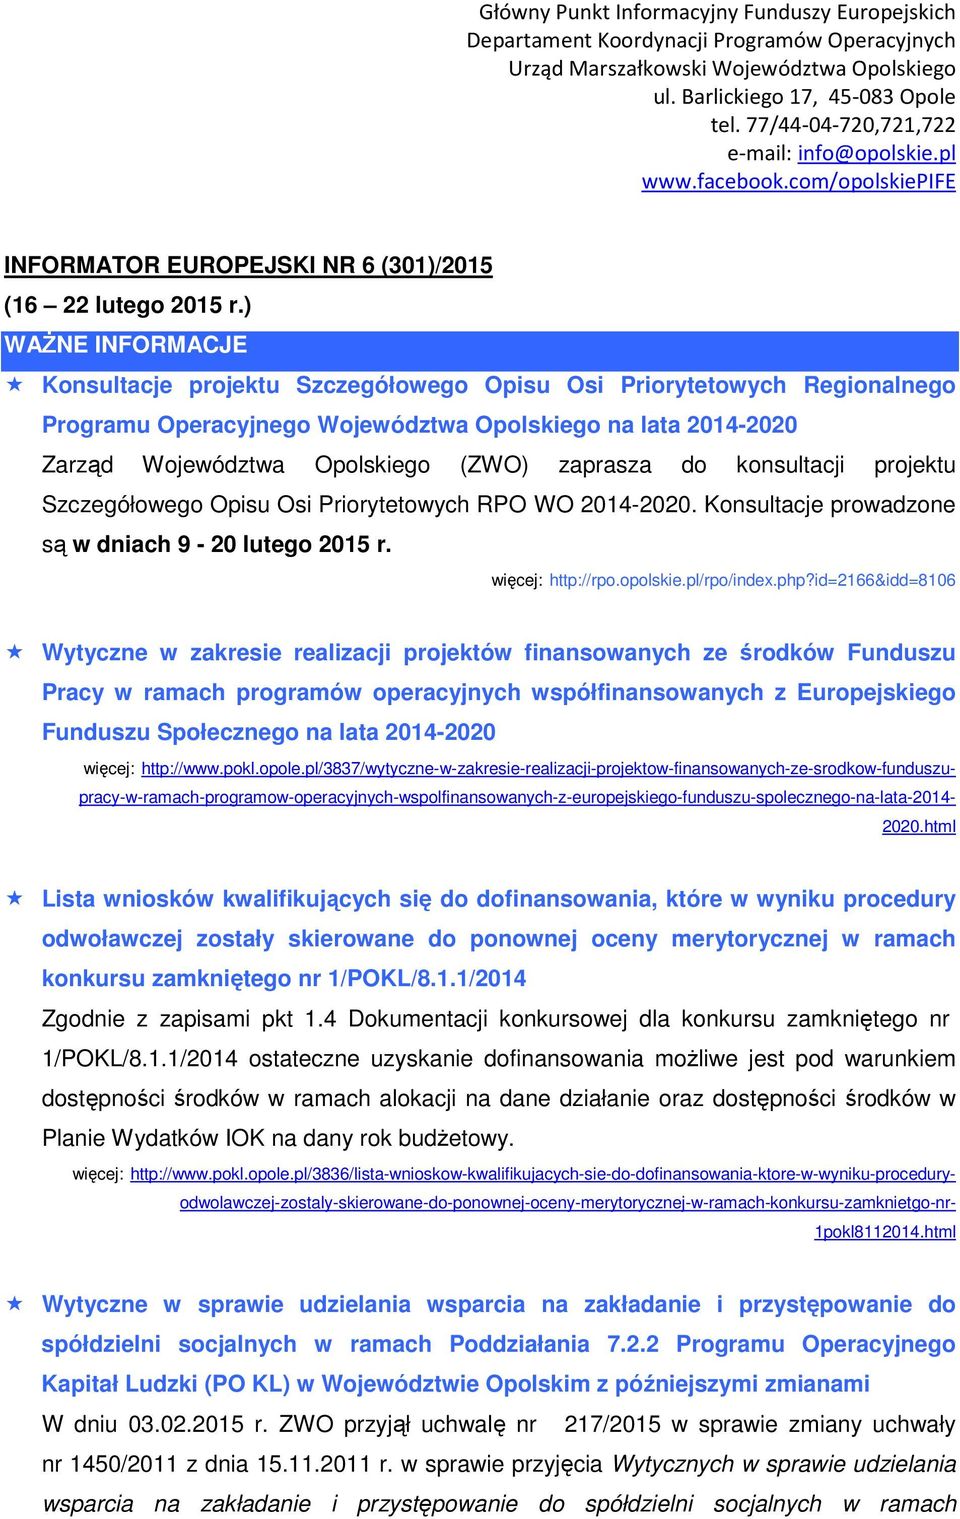 do konsultacji projektu Szczegółowego Opisu Osi Priorytetowych RPO WO 2014-2020. Konsultacje prowadzone są w dniach 9-20 lutego 2015 r. więcej: http://rpo.opolskie.pl/rpo/index.php?